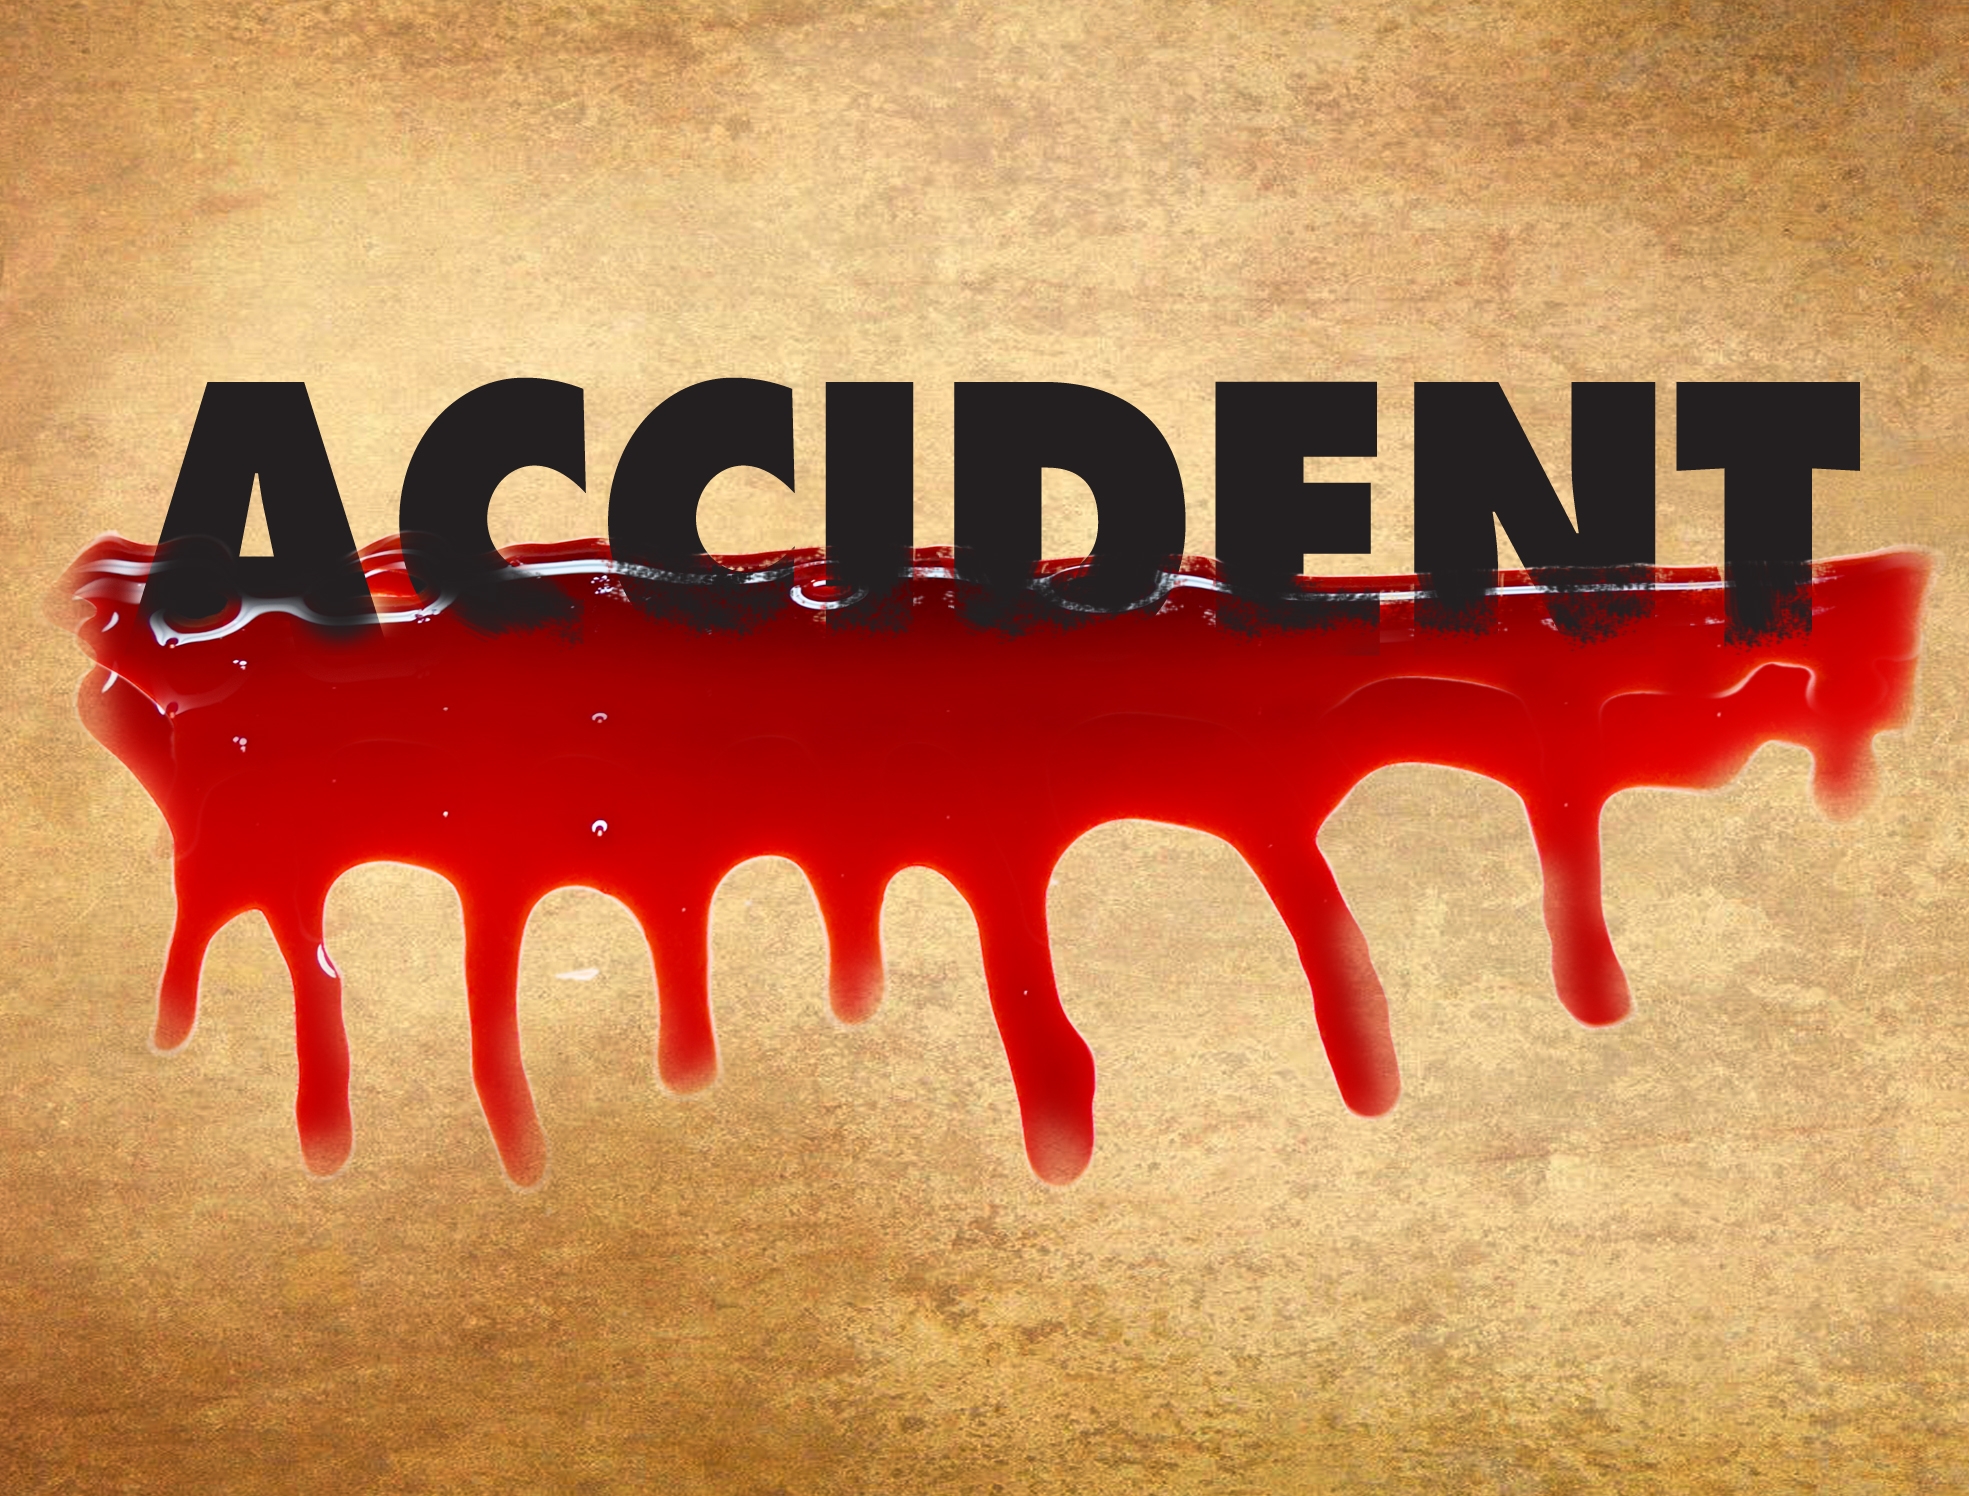  Four Killed In Road Accident In J&k's Doda-TeluguStop.com